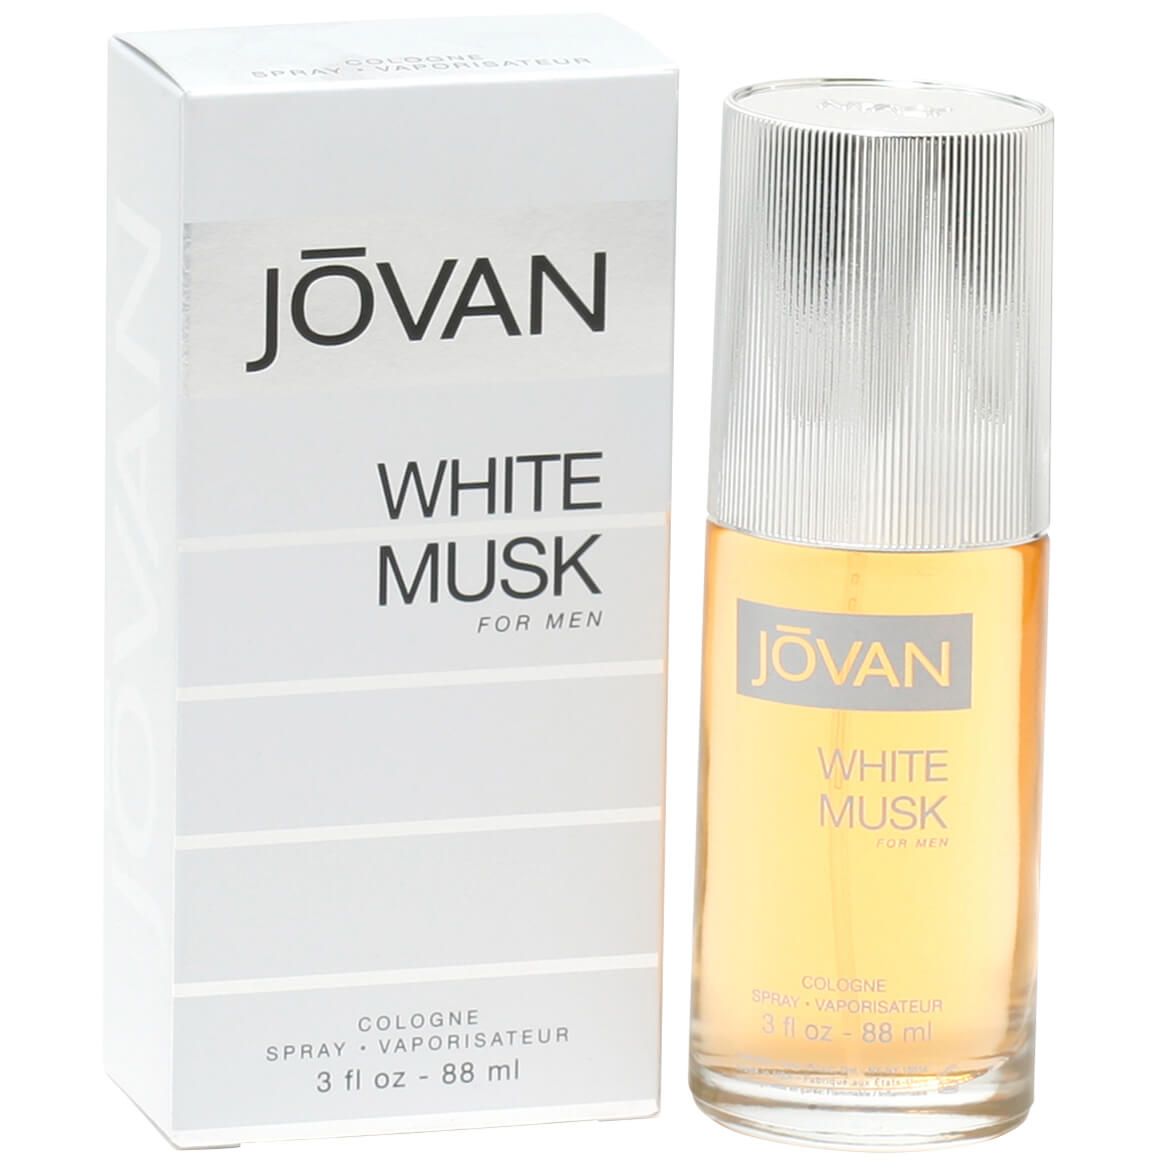 Jovan White Musk for Men Cologne Spray, 3 fl. oz. + '-' + 377169